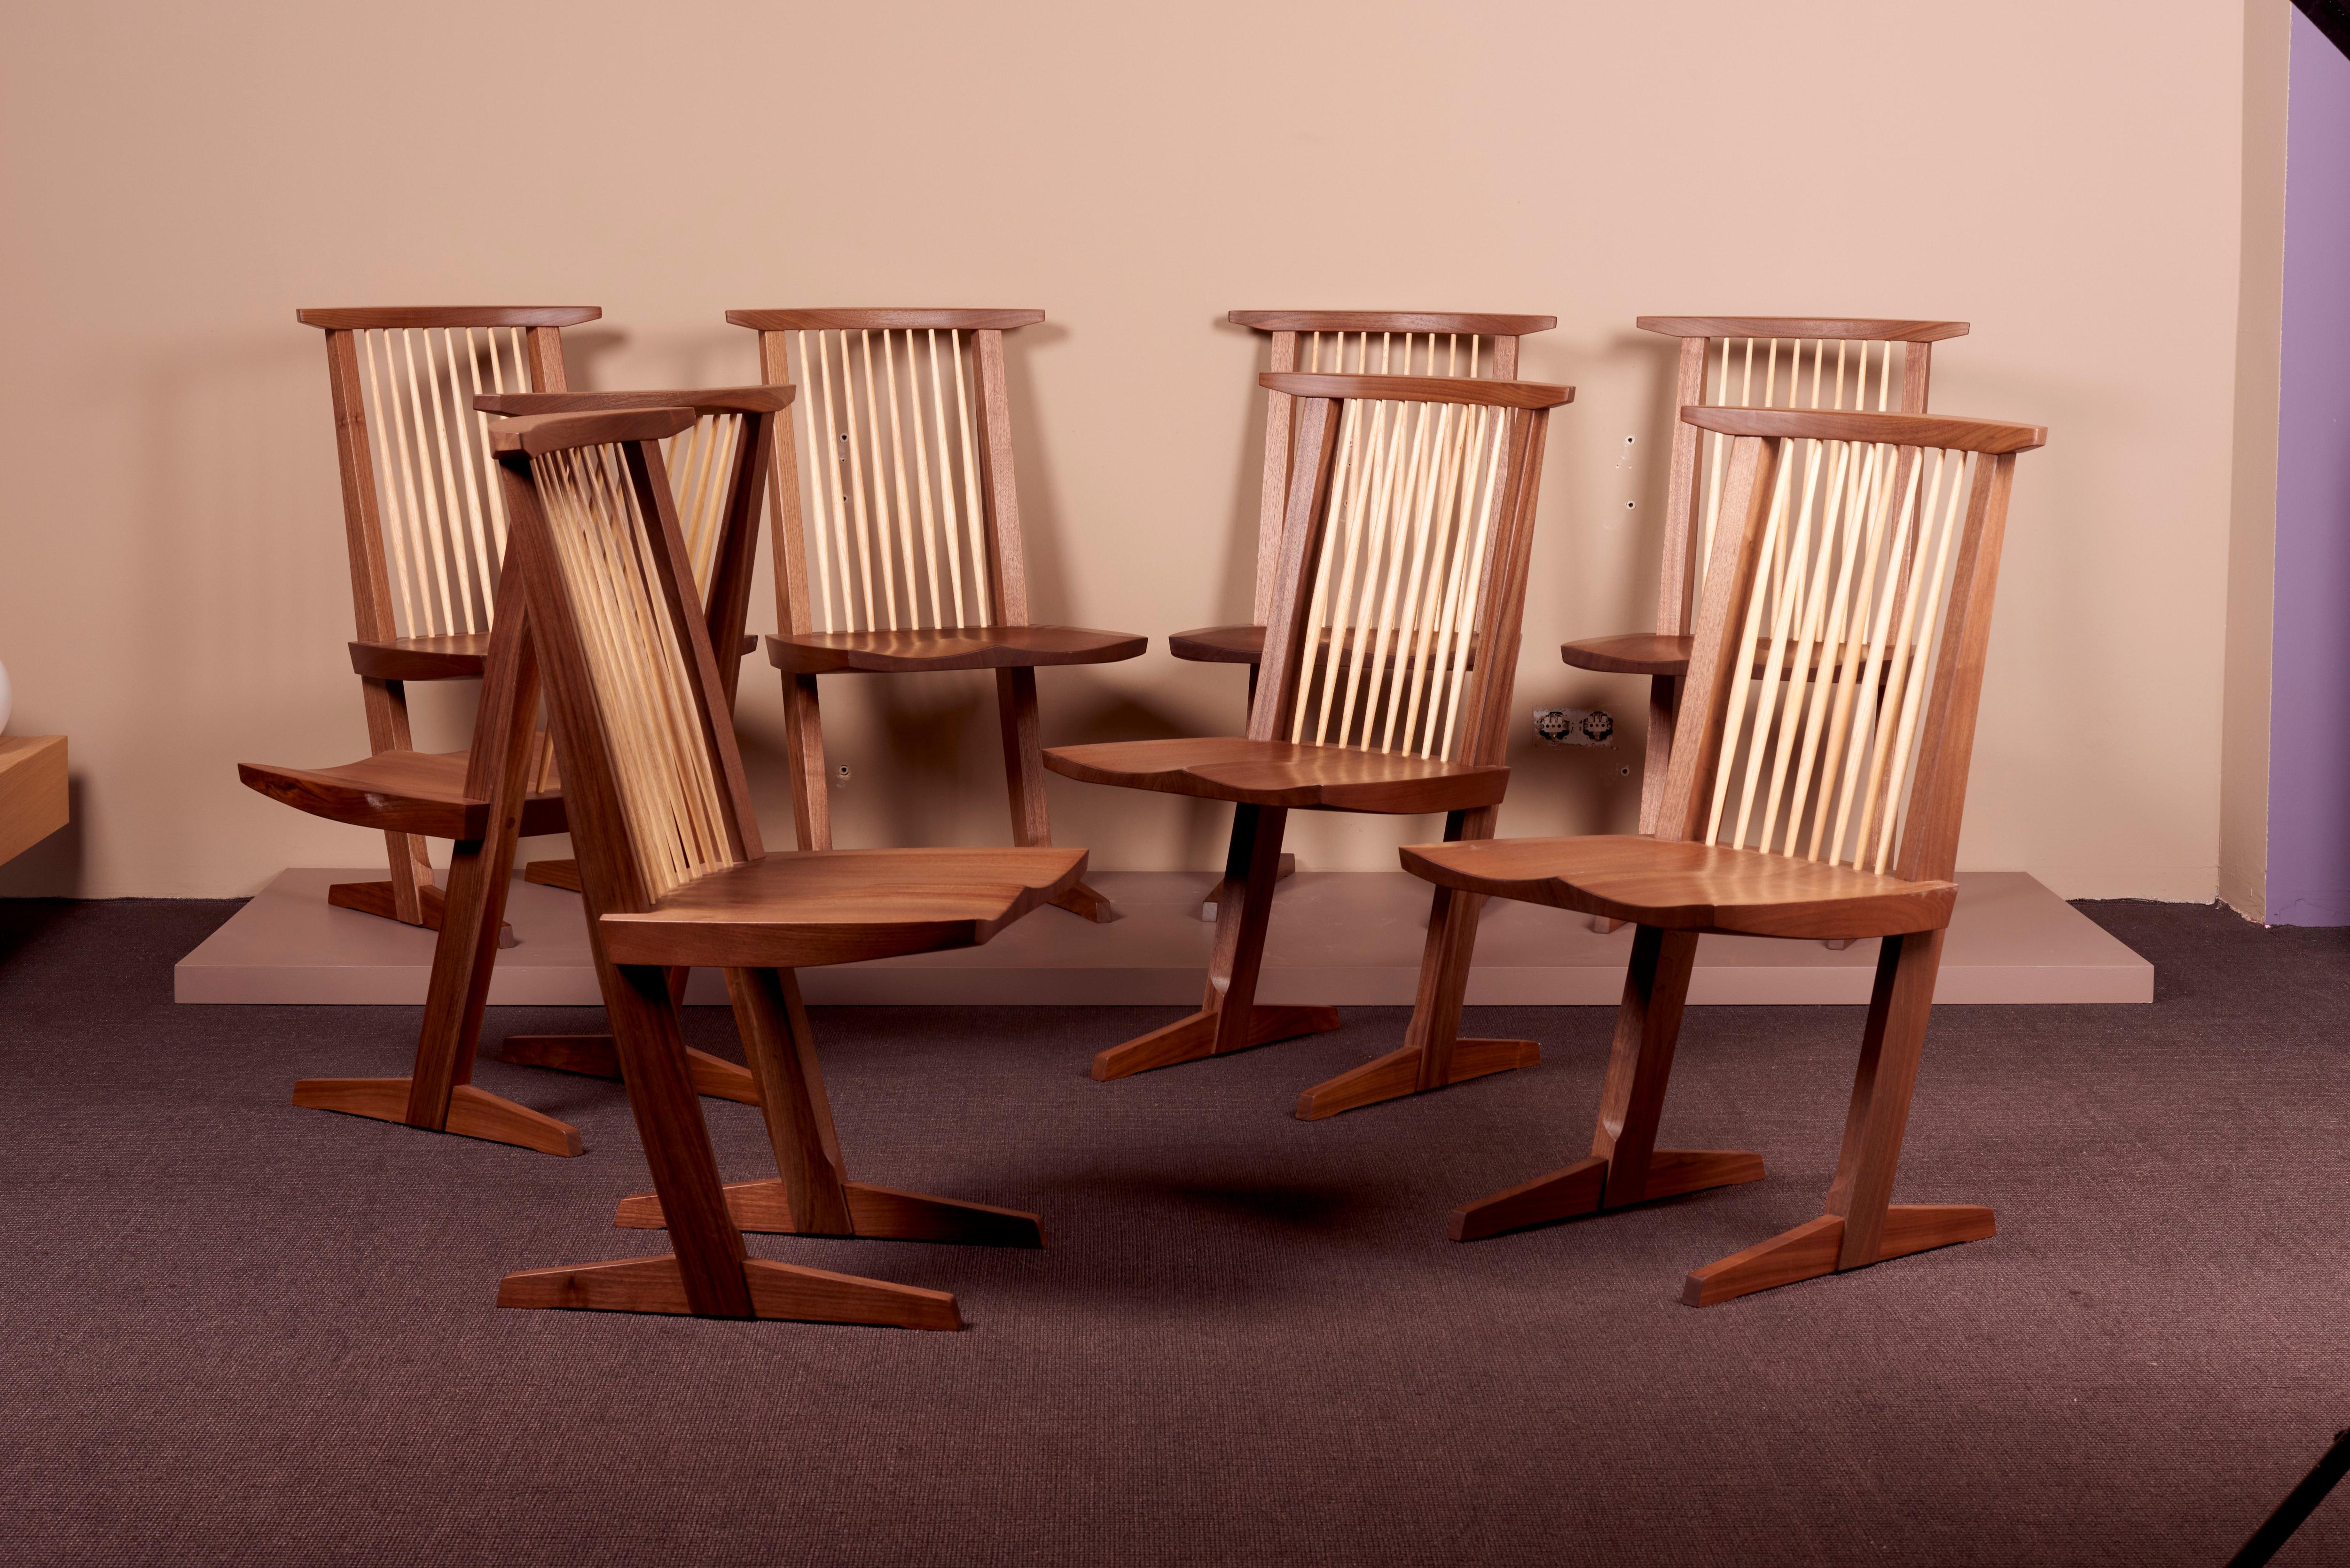 Ensemble de 8 chaises Conoid Dining par Mira Nakashima sur la base d'un design de George Nakashima. Toutes les chaises peuvent être signées (juste un exemple sur la photo). Important : Veuillez tenir compte du délai de production d'environ 18 mois.